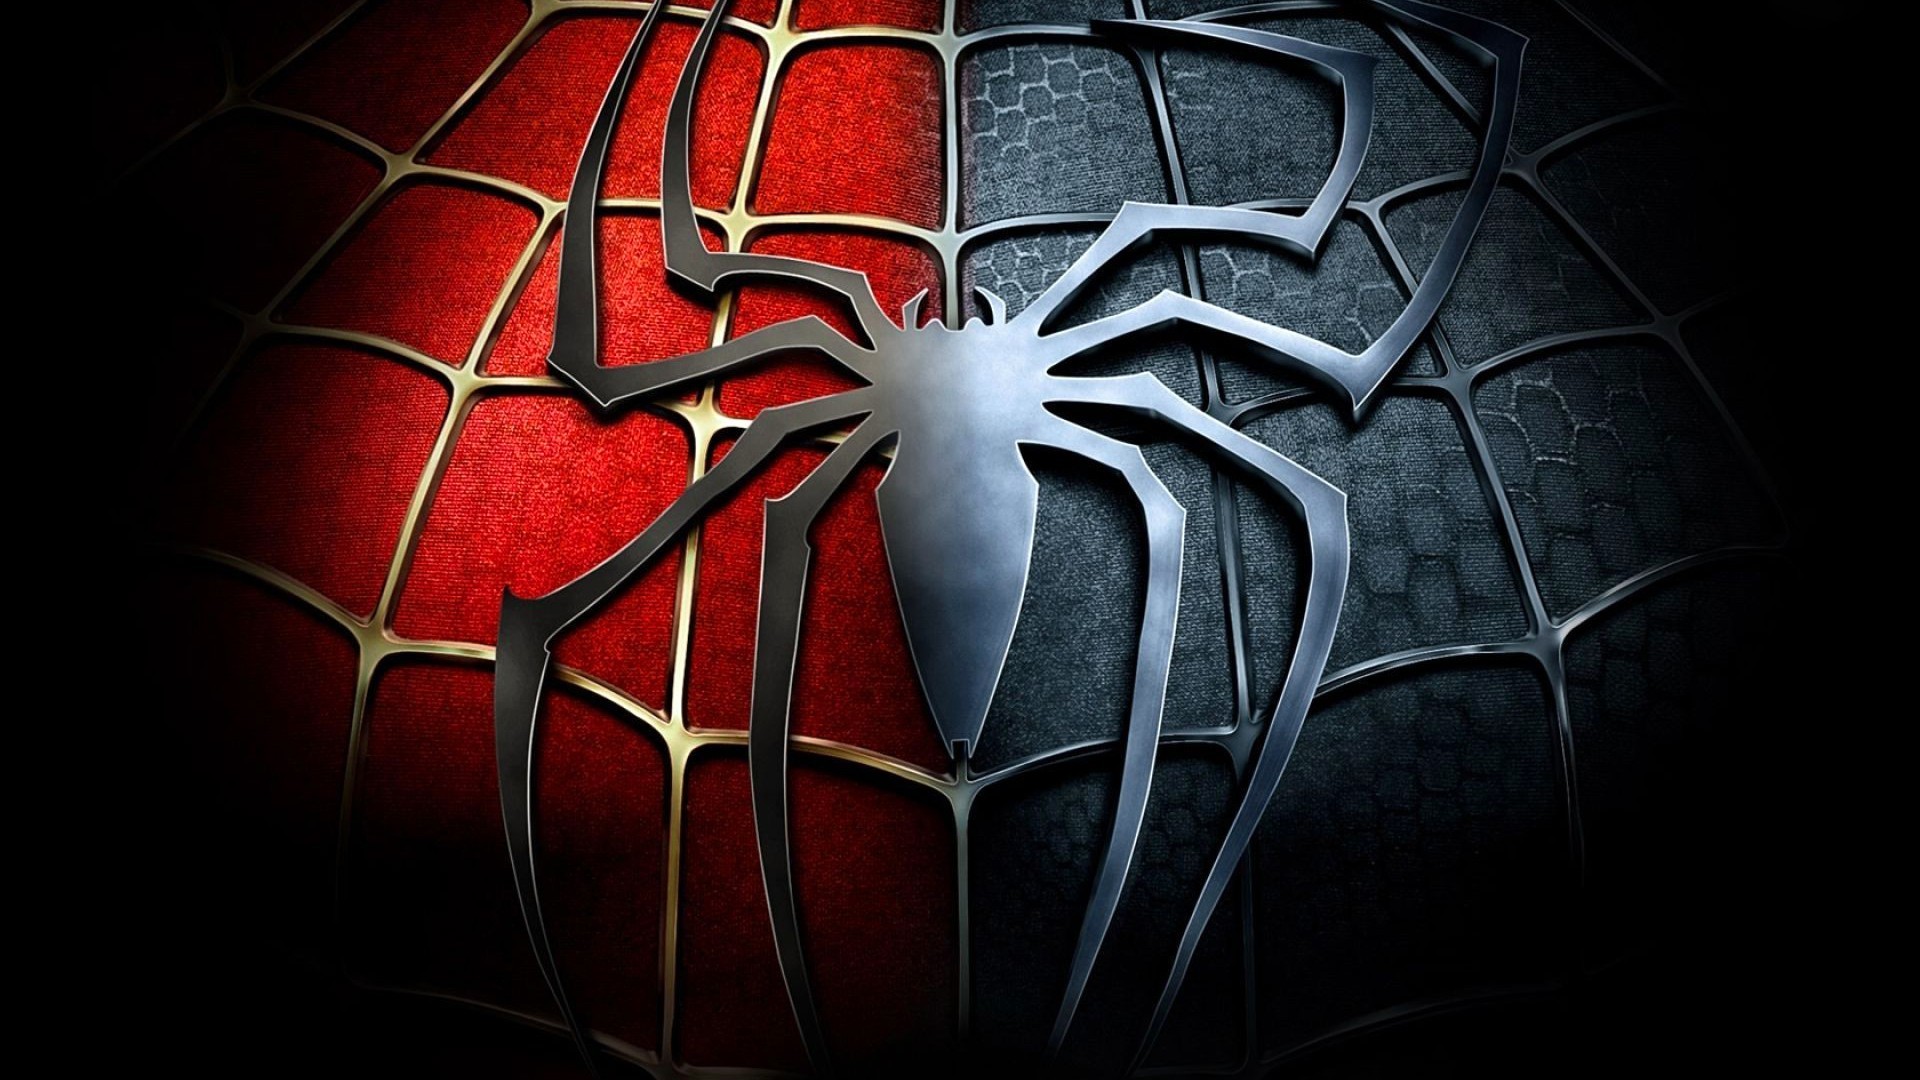 Animated Spider Man Showen Over Black Background 2K wallpaper download